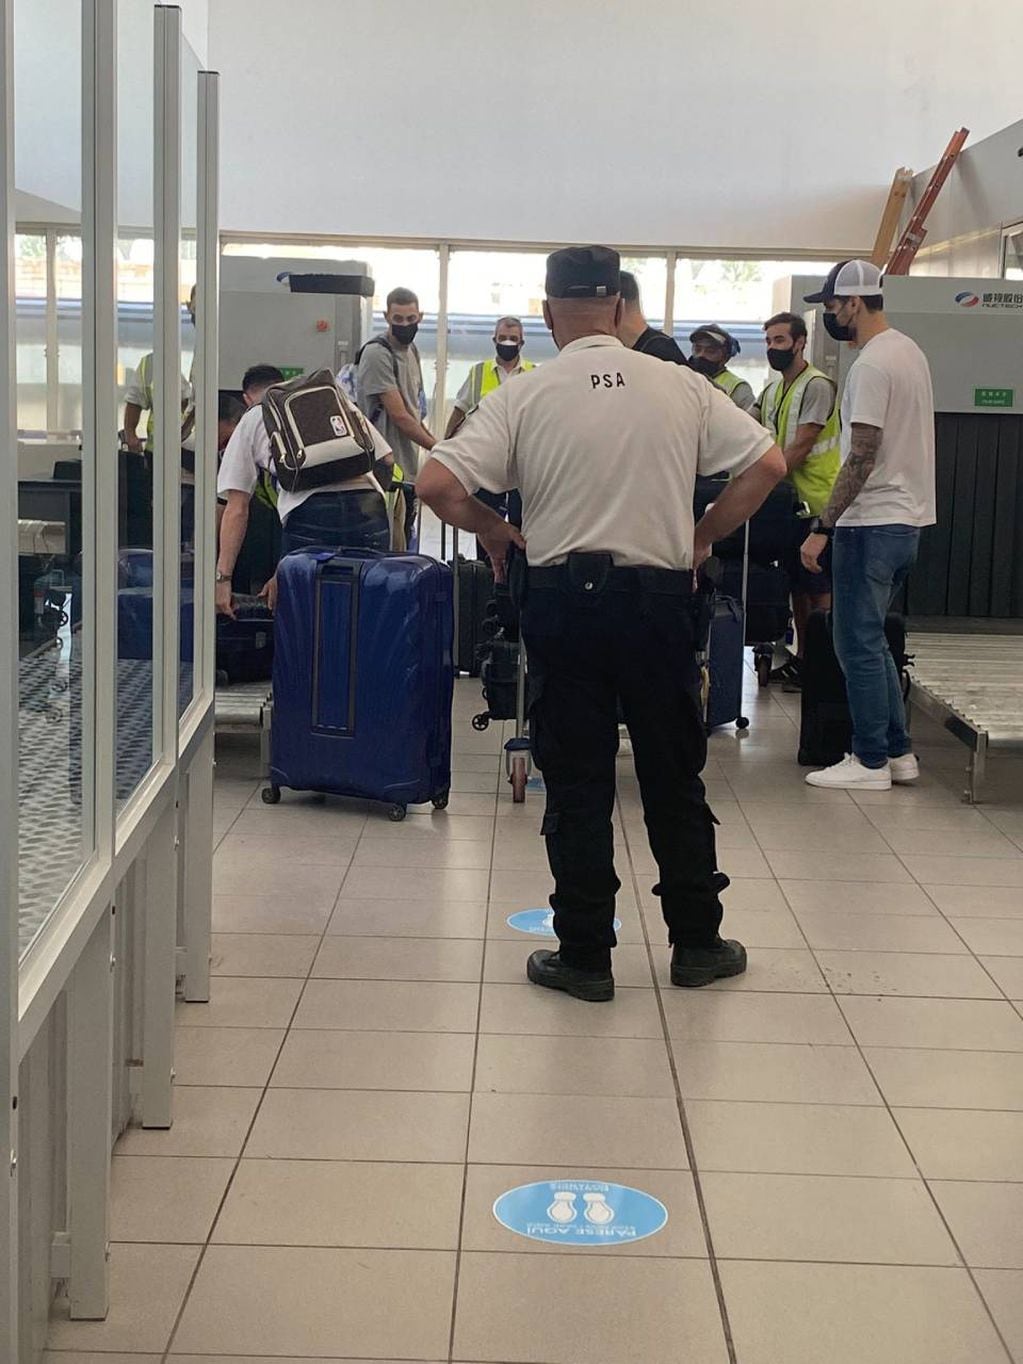 "Fideo" y sus compañeros recogieron las valijas dentro de la terminal antes de irse.